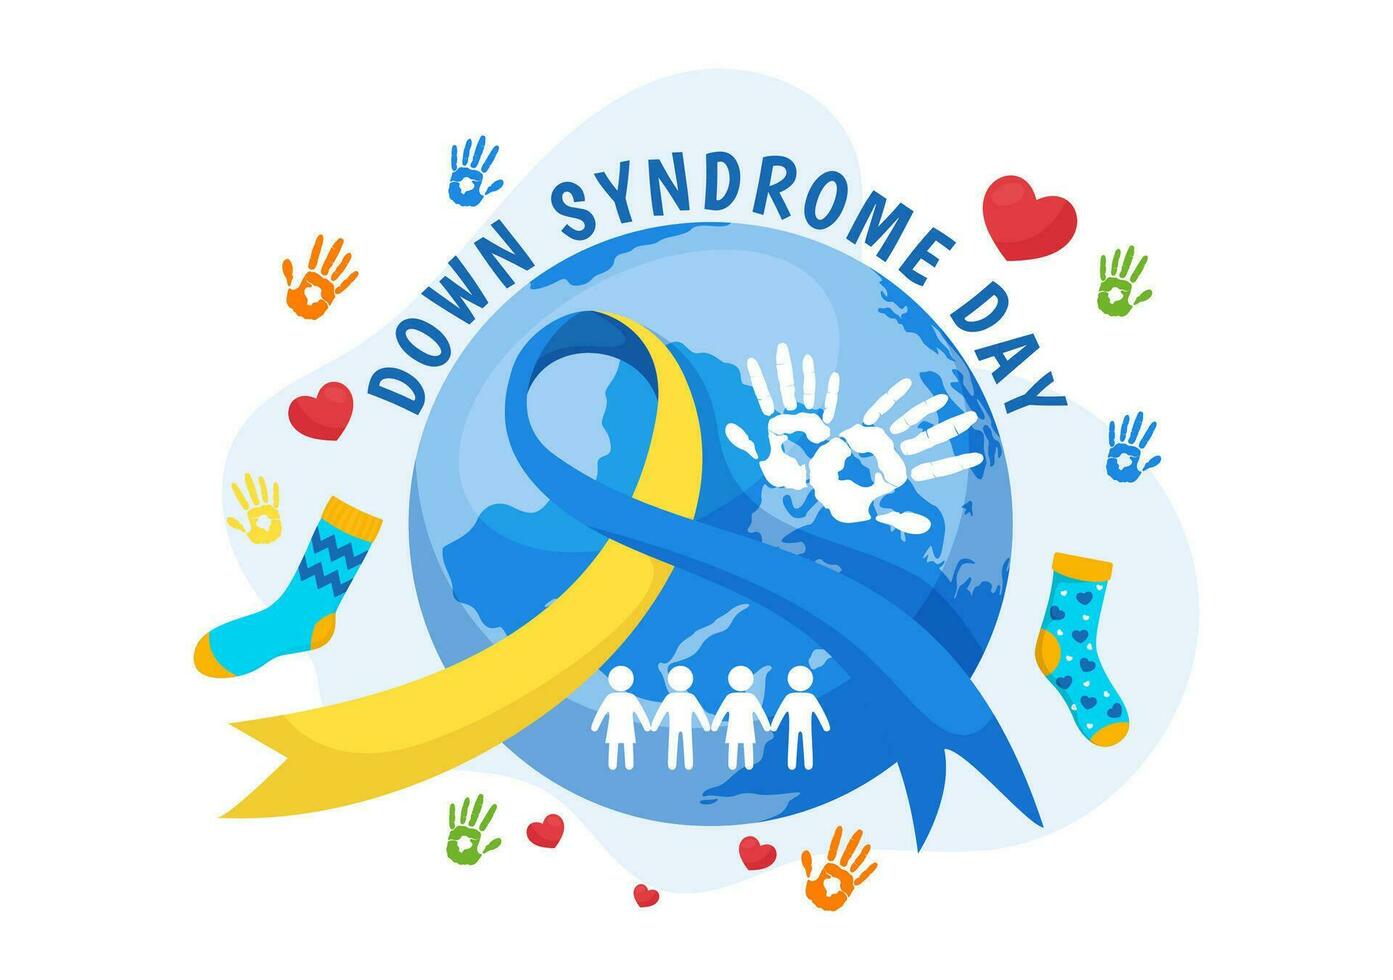 mundo abajo síndrome día vector ilustración en marzo 21 con azul y amarillo cinta, tierra mapa, desemparejado calcetines y niños en plano dibujos animados antecedentes